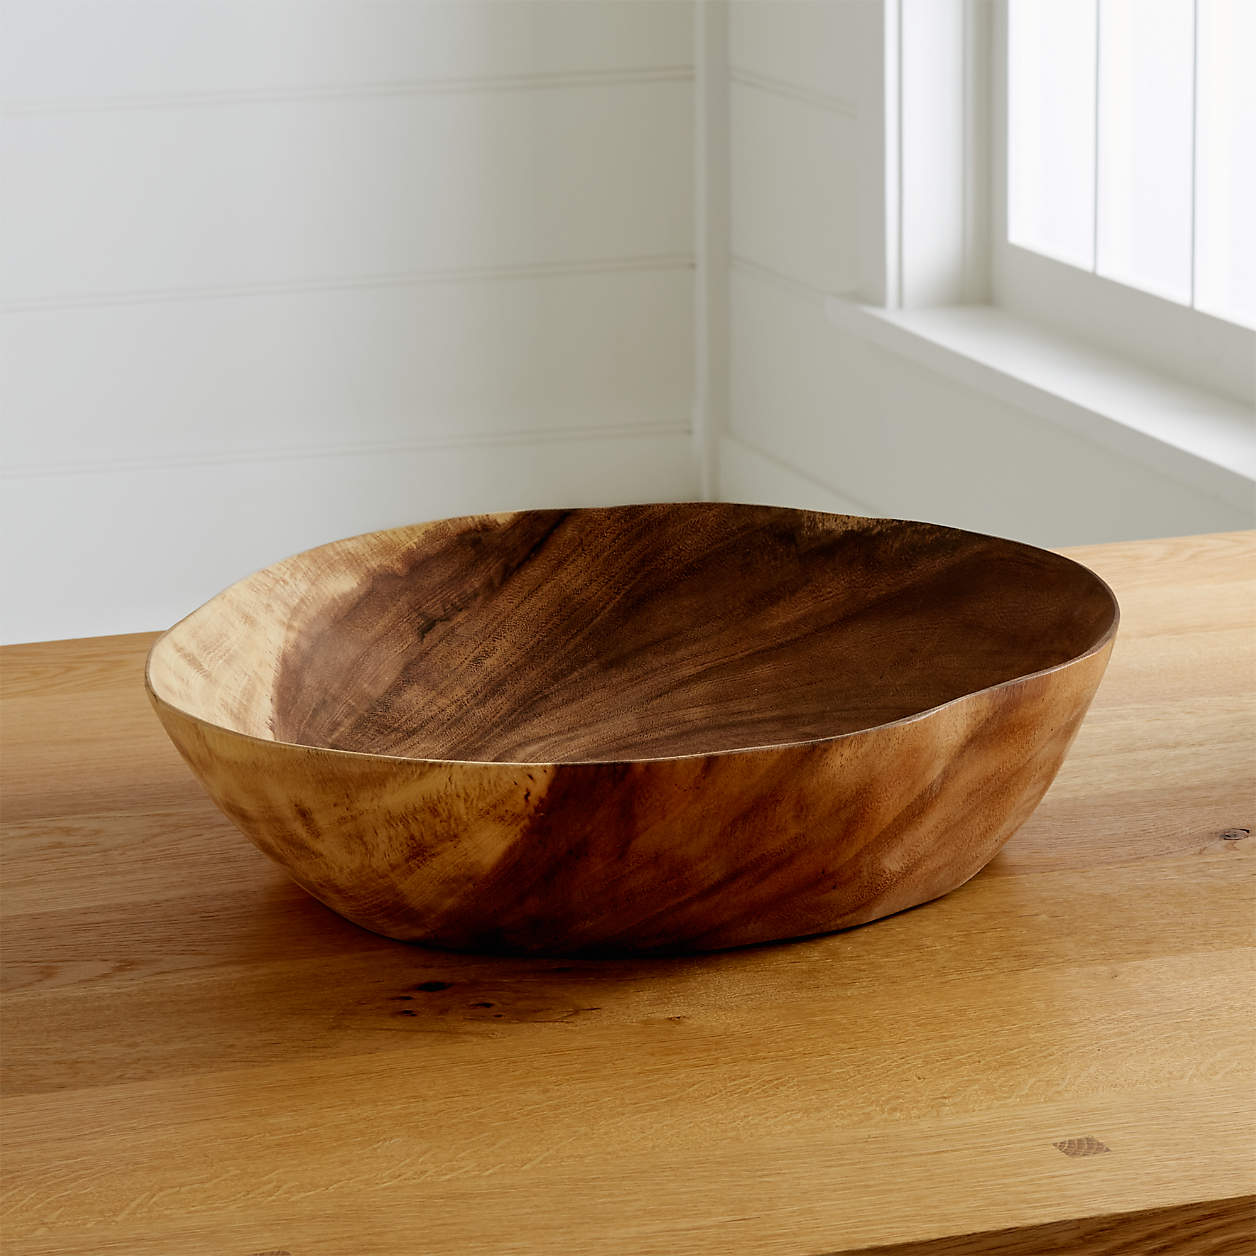 wooden centerpiece bowl wedding gift